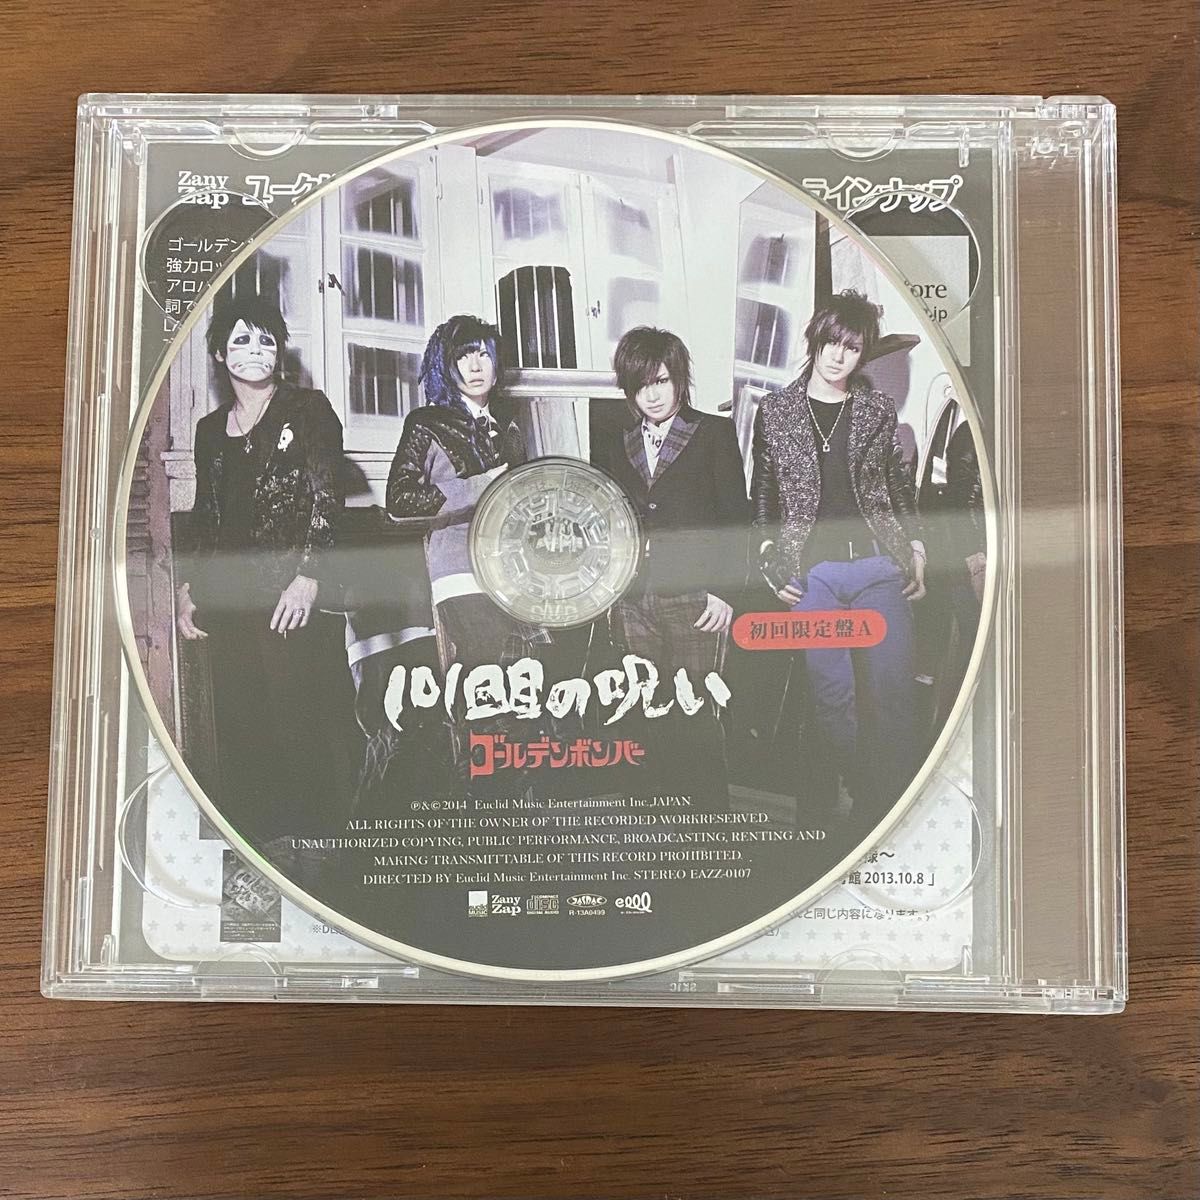 初回盤A ゴールデンボンバー CD+DVD/101回目の呪い 14/1/1発売 オリコン加盟店